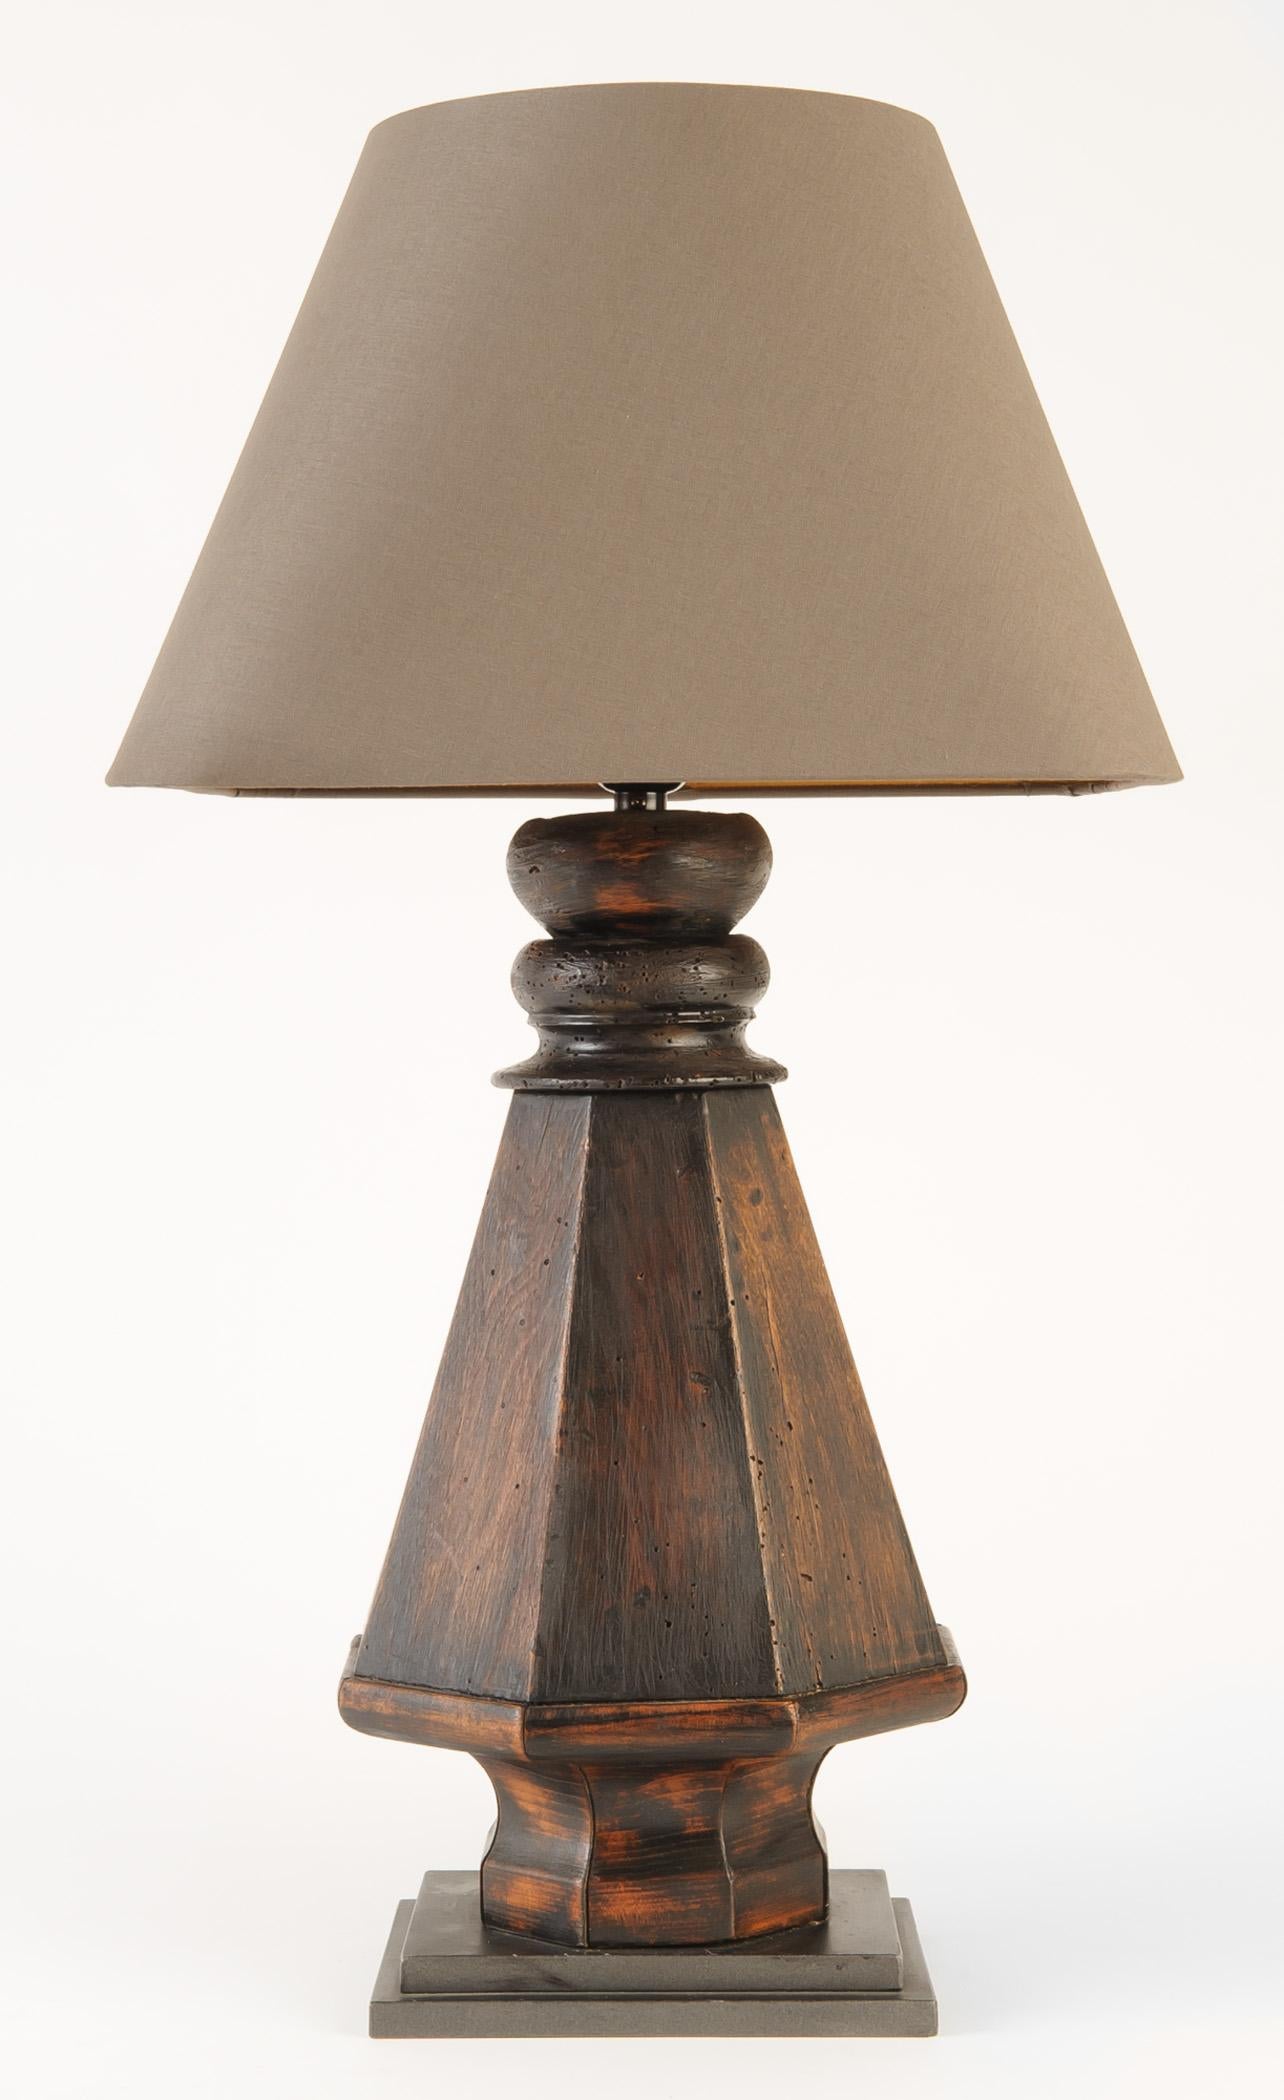 Cette paire de lampes en bois a été créée à partir des pieds d'une table de billard. La base est montée sur une équerre métallique graduée. L'abat-jour en lin taupe personnalisé est carré avec des coins arrondis et une doublure en papier bronze. La